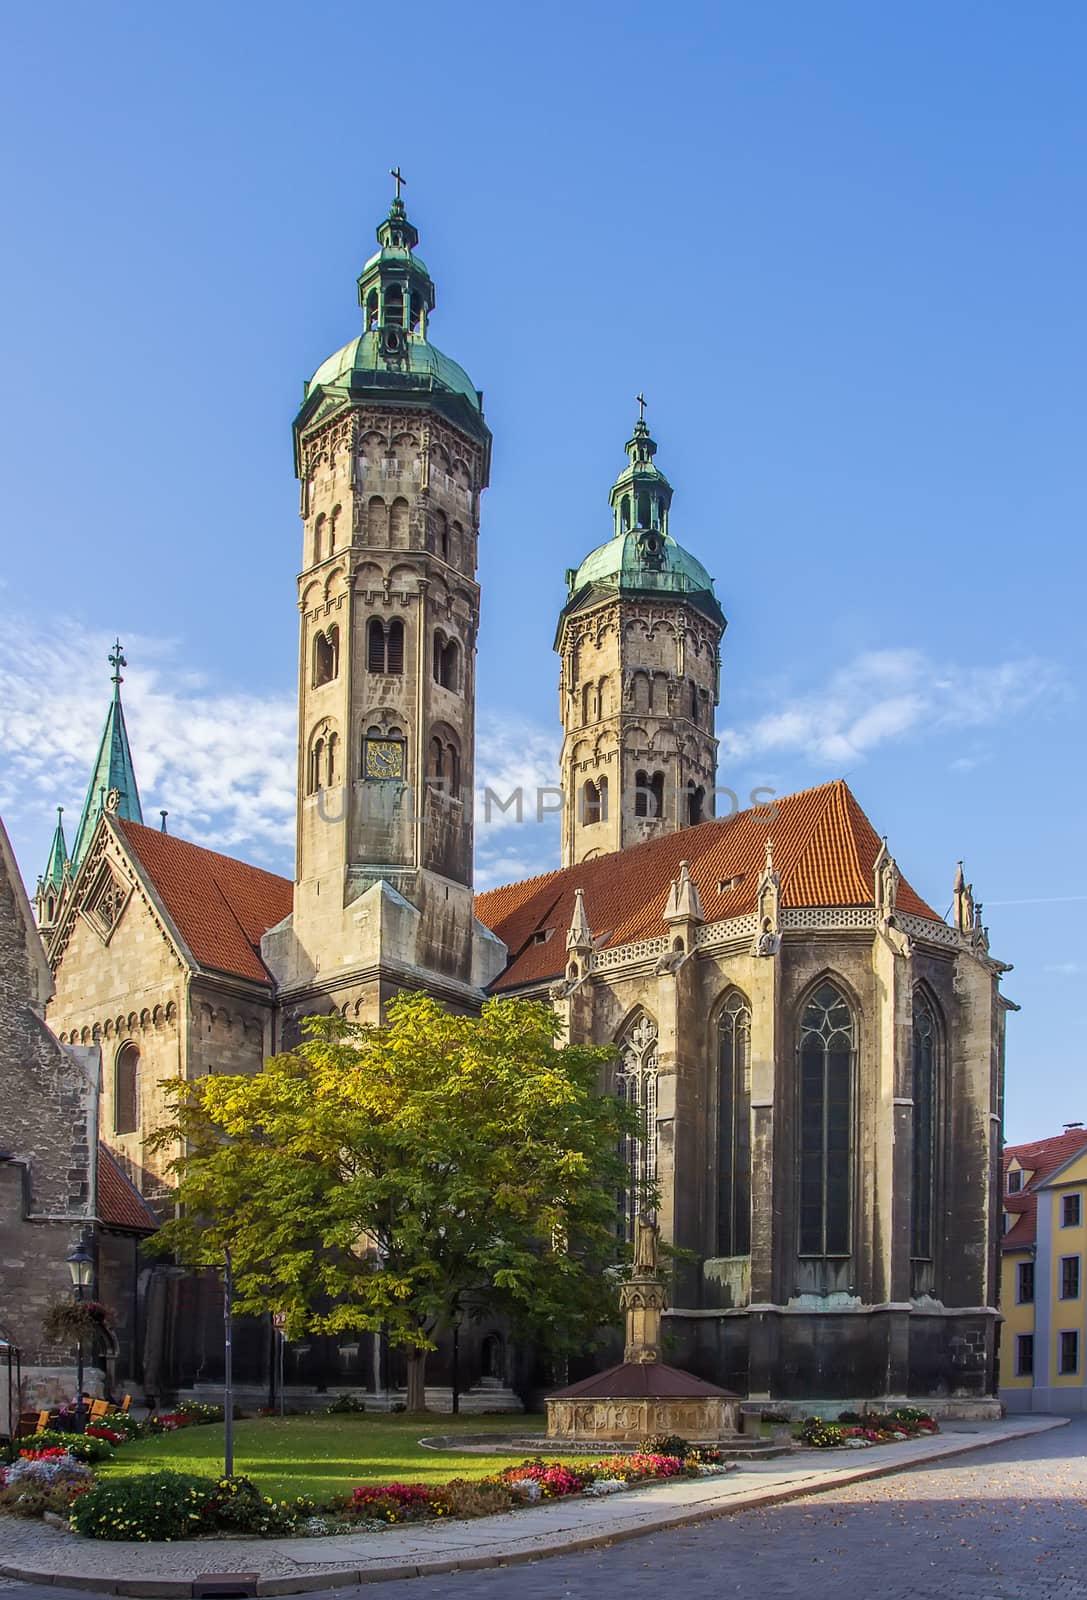 Naumburger Cathedral, Germany by borisb17